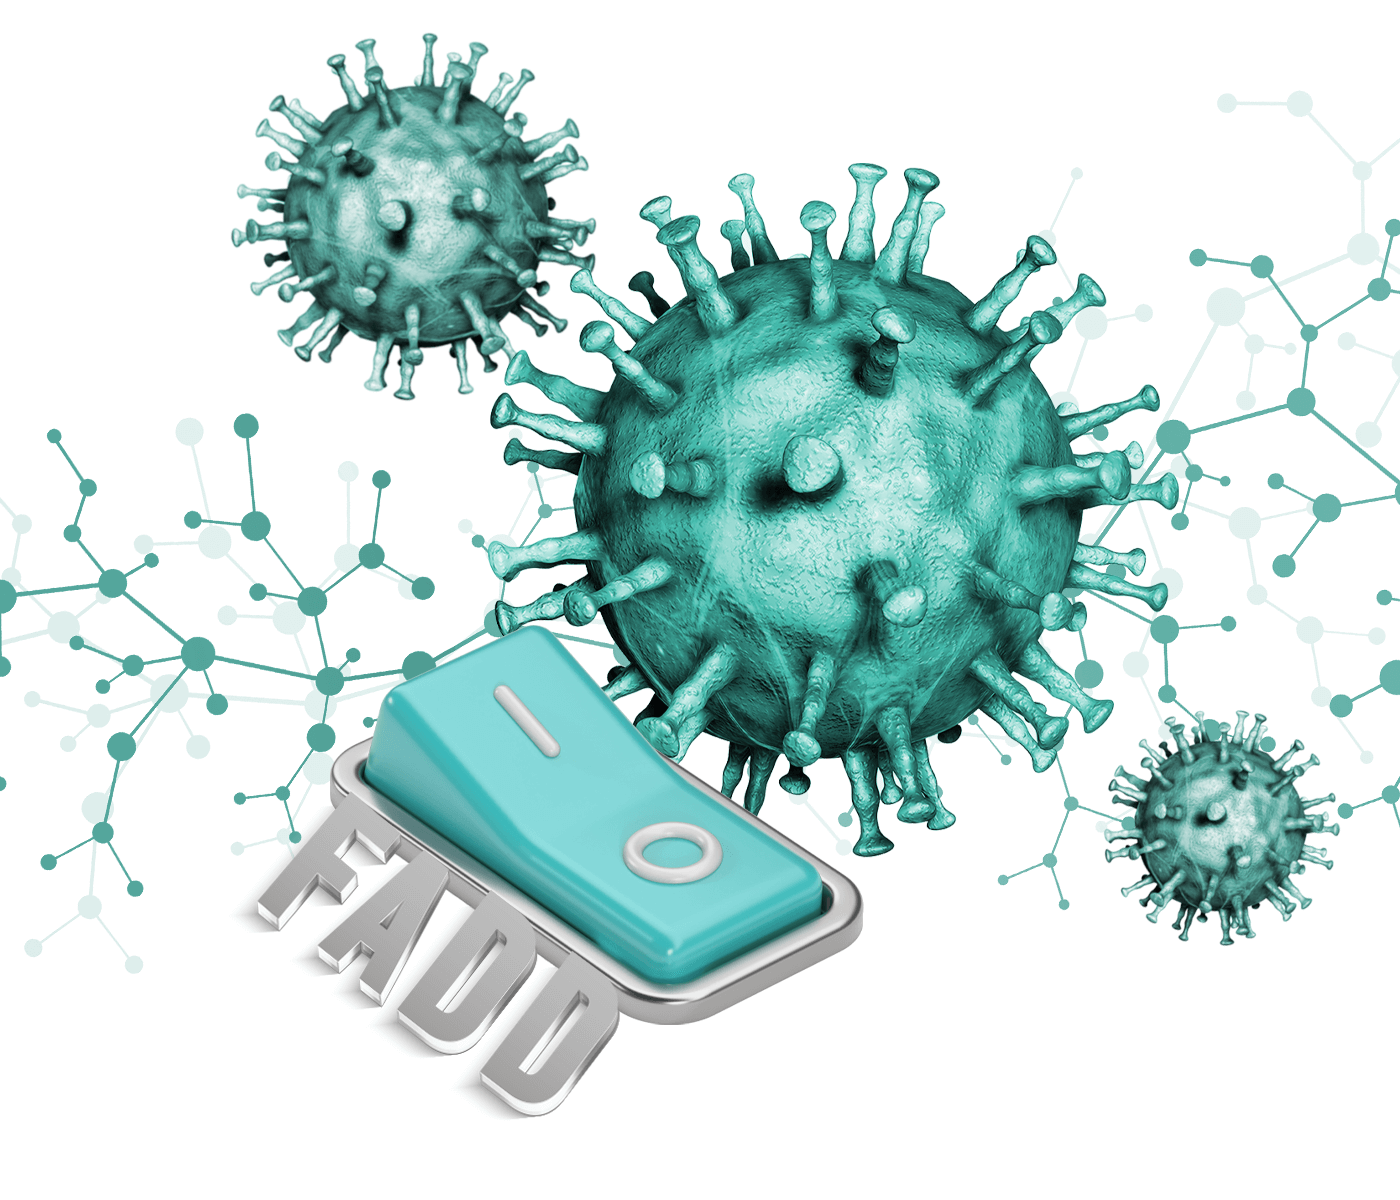 FADD juega un papel crucial en la supresión de la infección por PRRSV